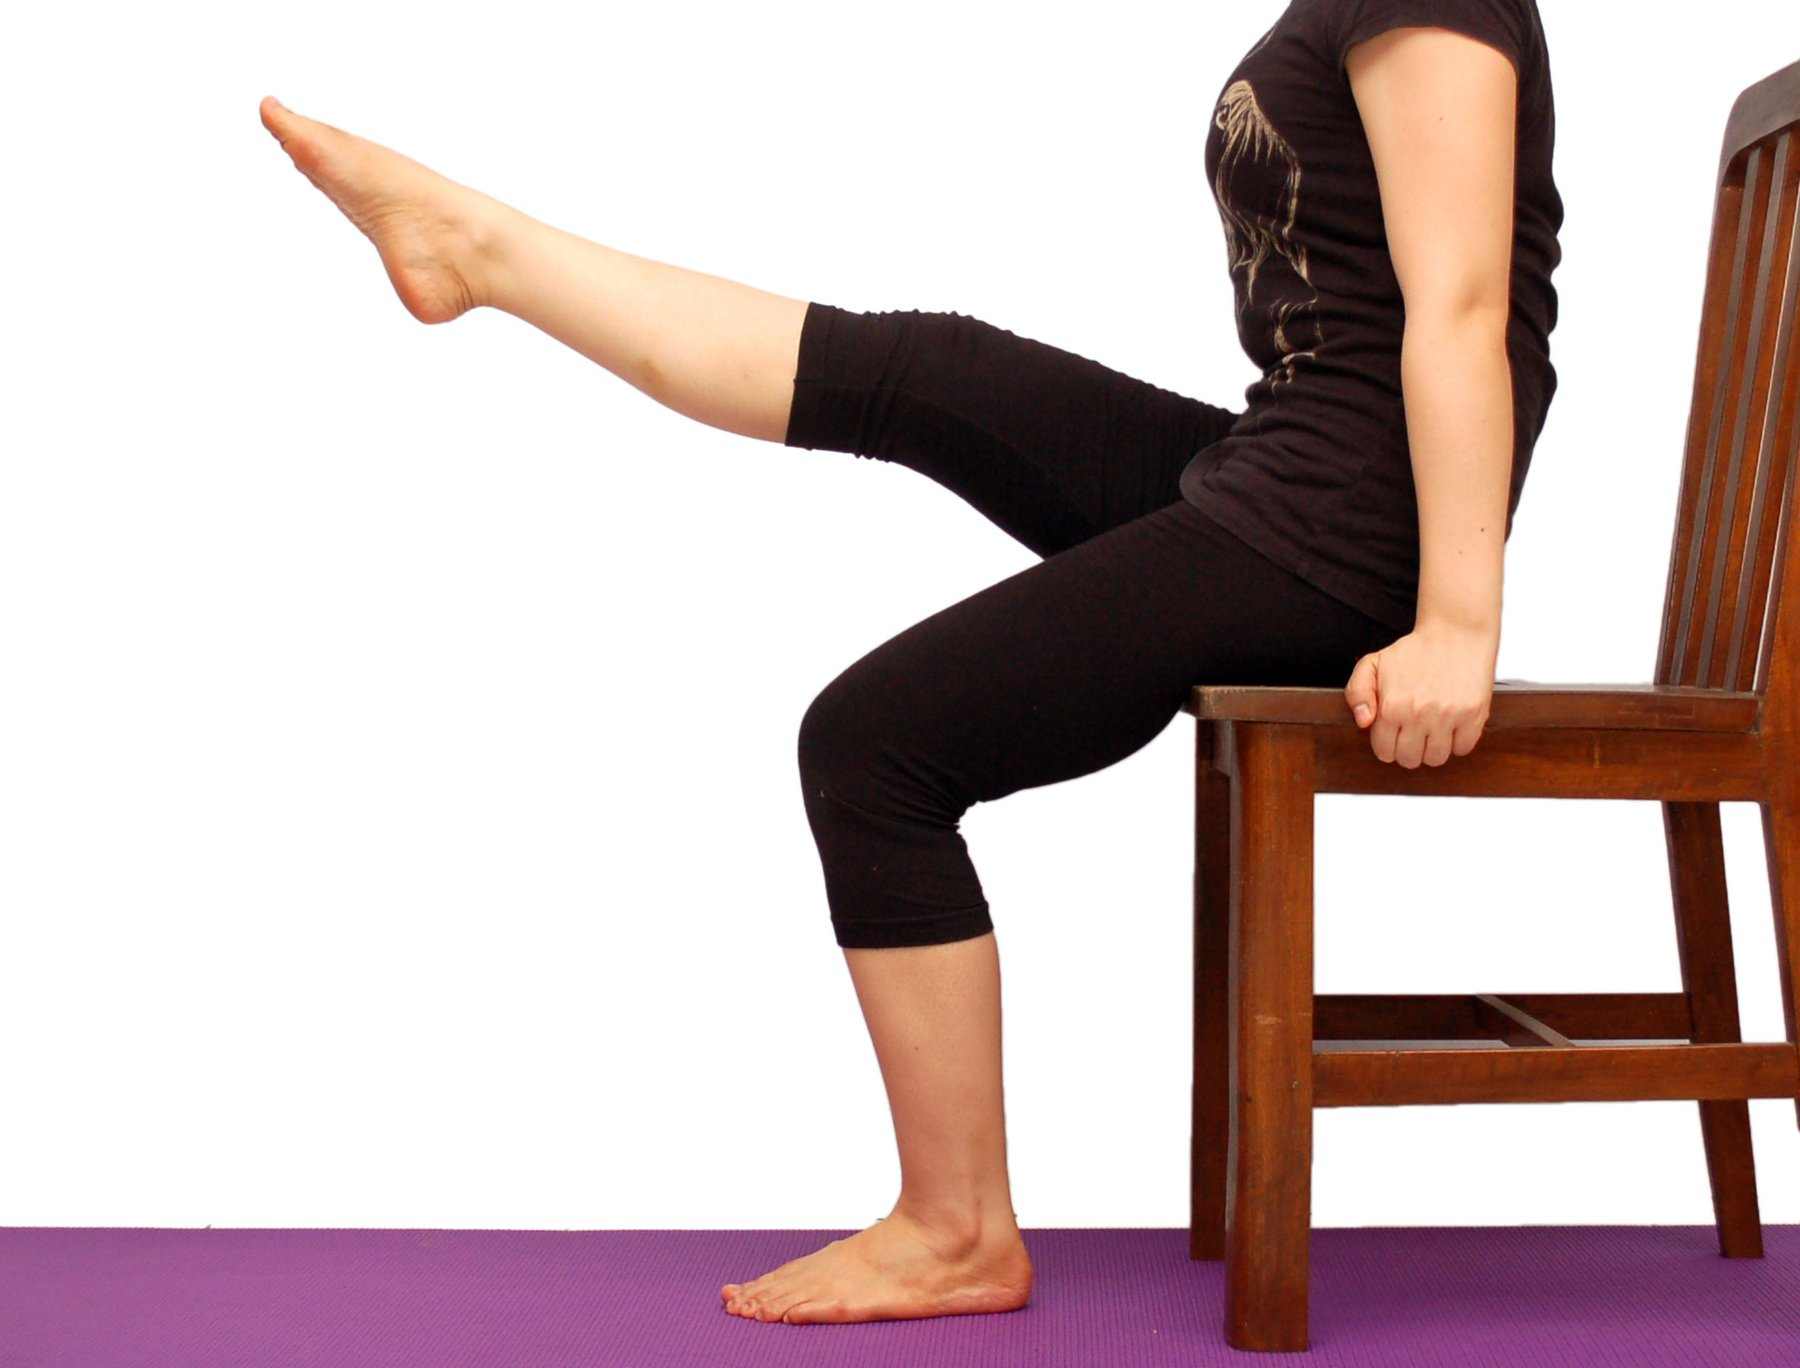 Ngồi tựa kết hợp nâng chân là động tác làm thon gọn bàn chân đơn giản, có thể thực hiện mọi lúc